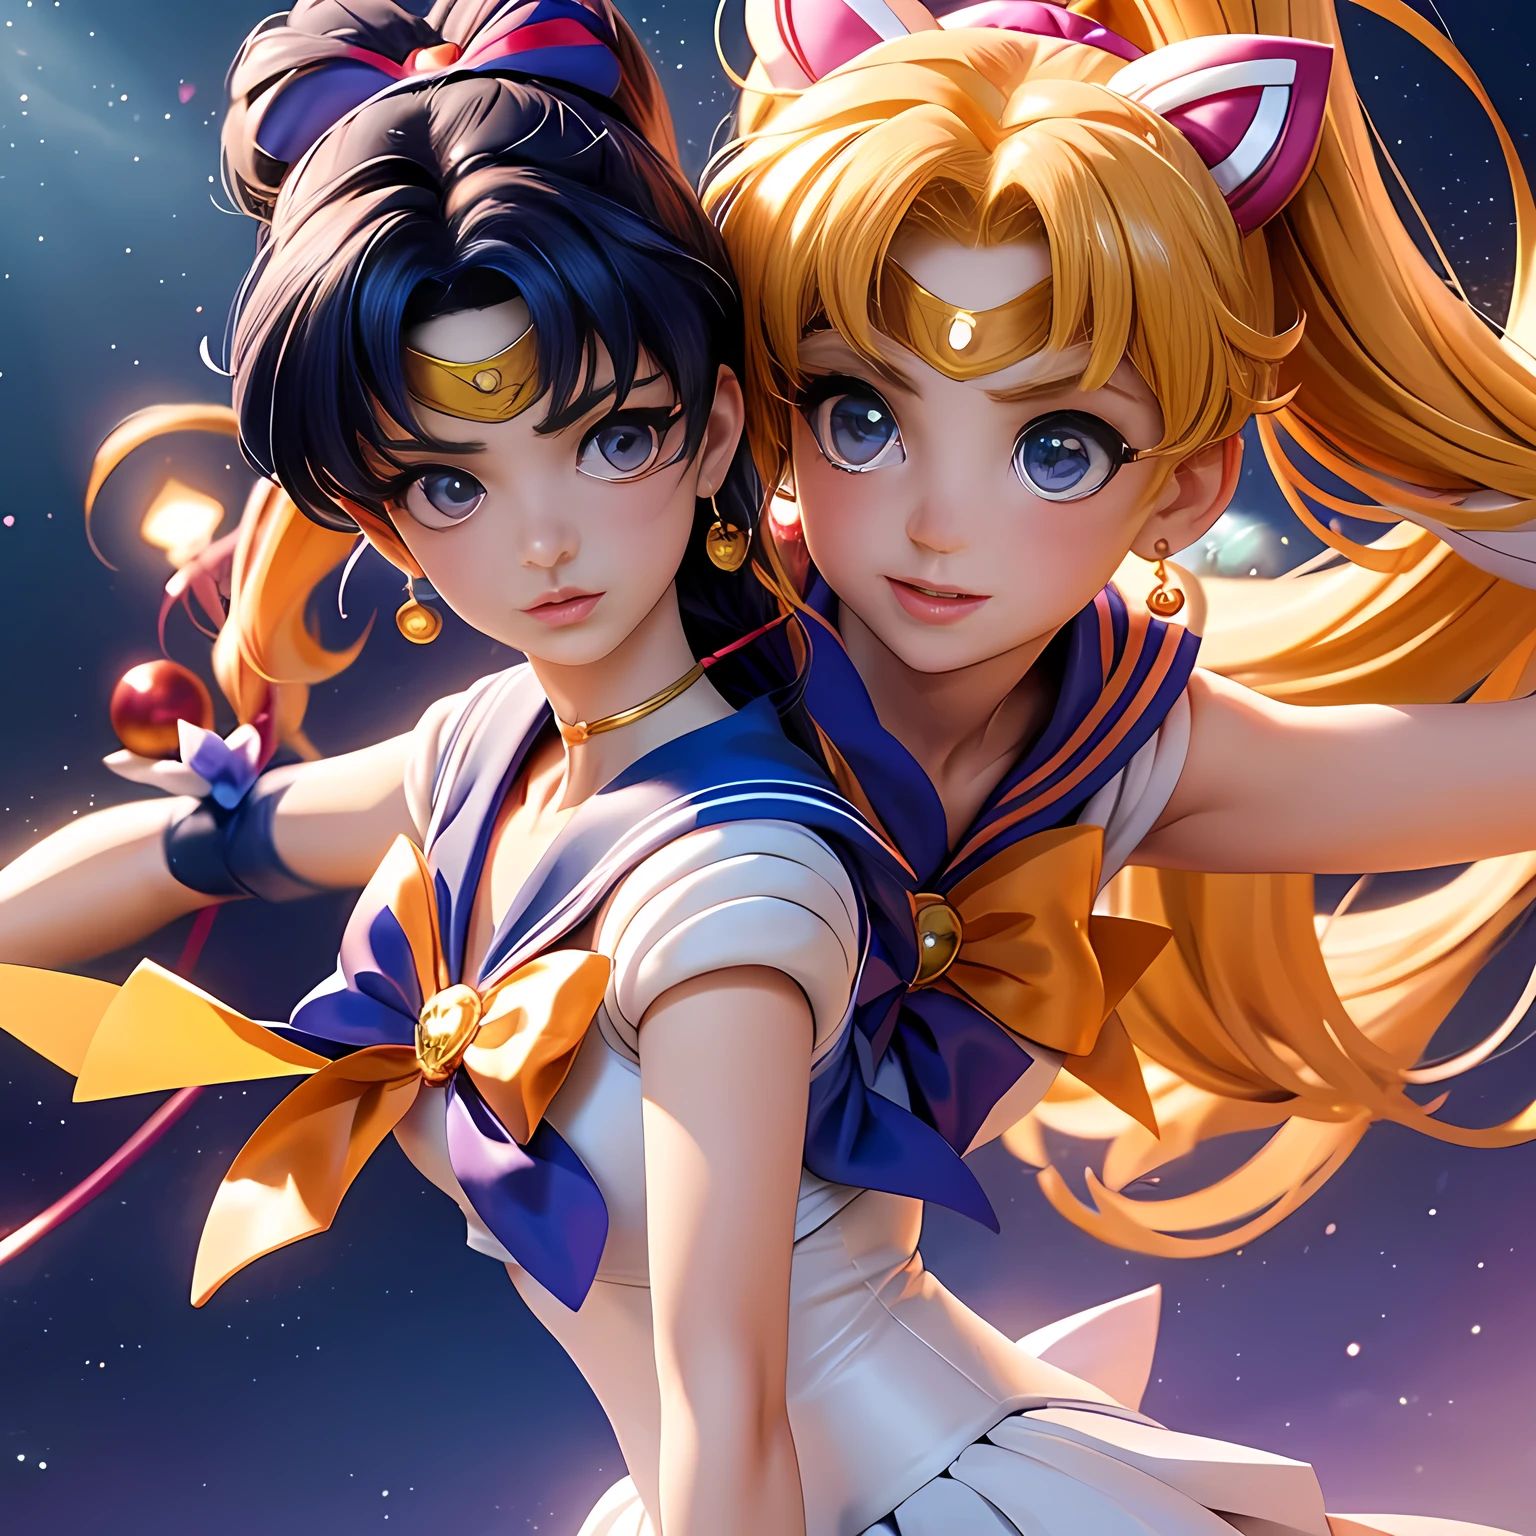 Sailor Moon、Seemann Merkur、Seemann Venus、Sailor Mars、Seemann Jupiter、SAILOR Saturn